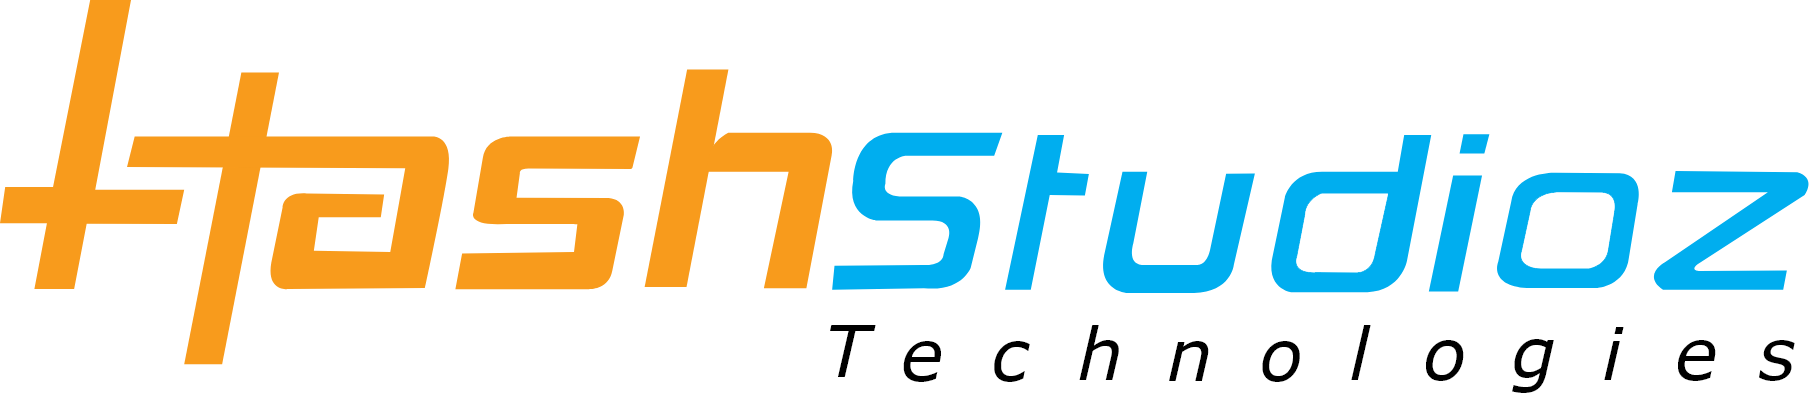 HashStudioz Technologies Inc